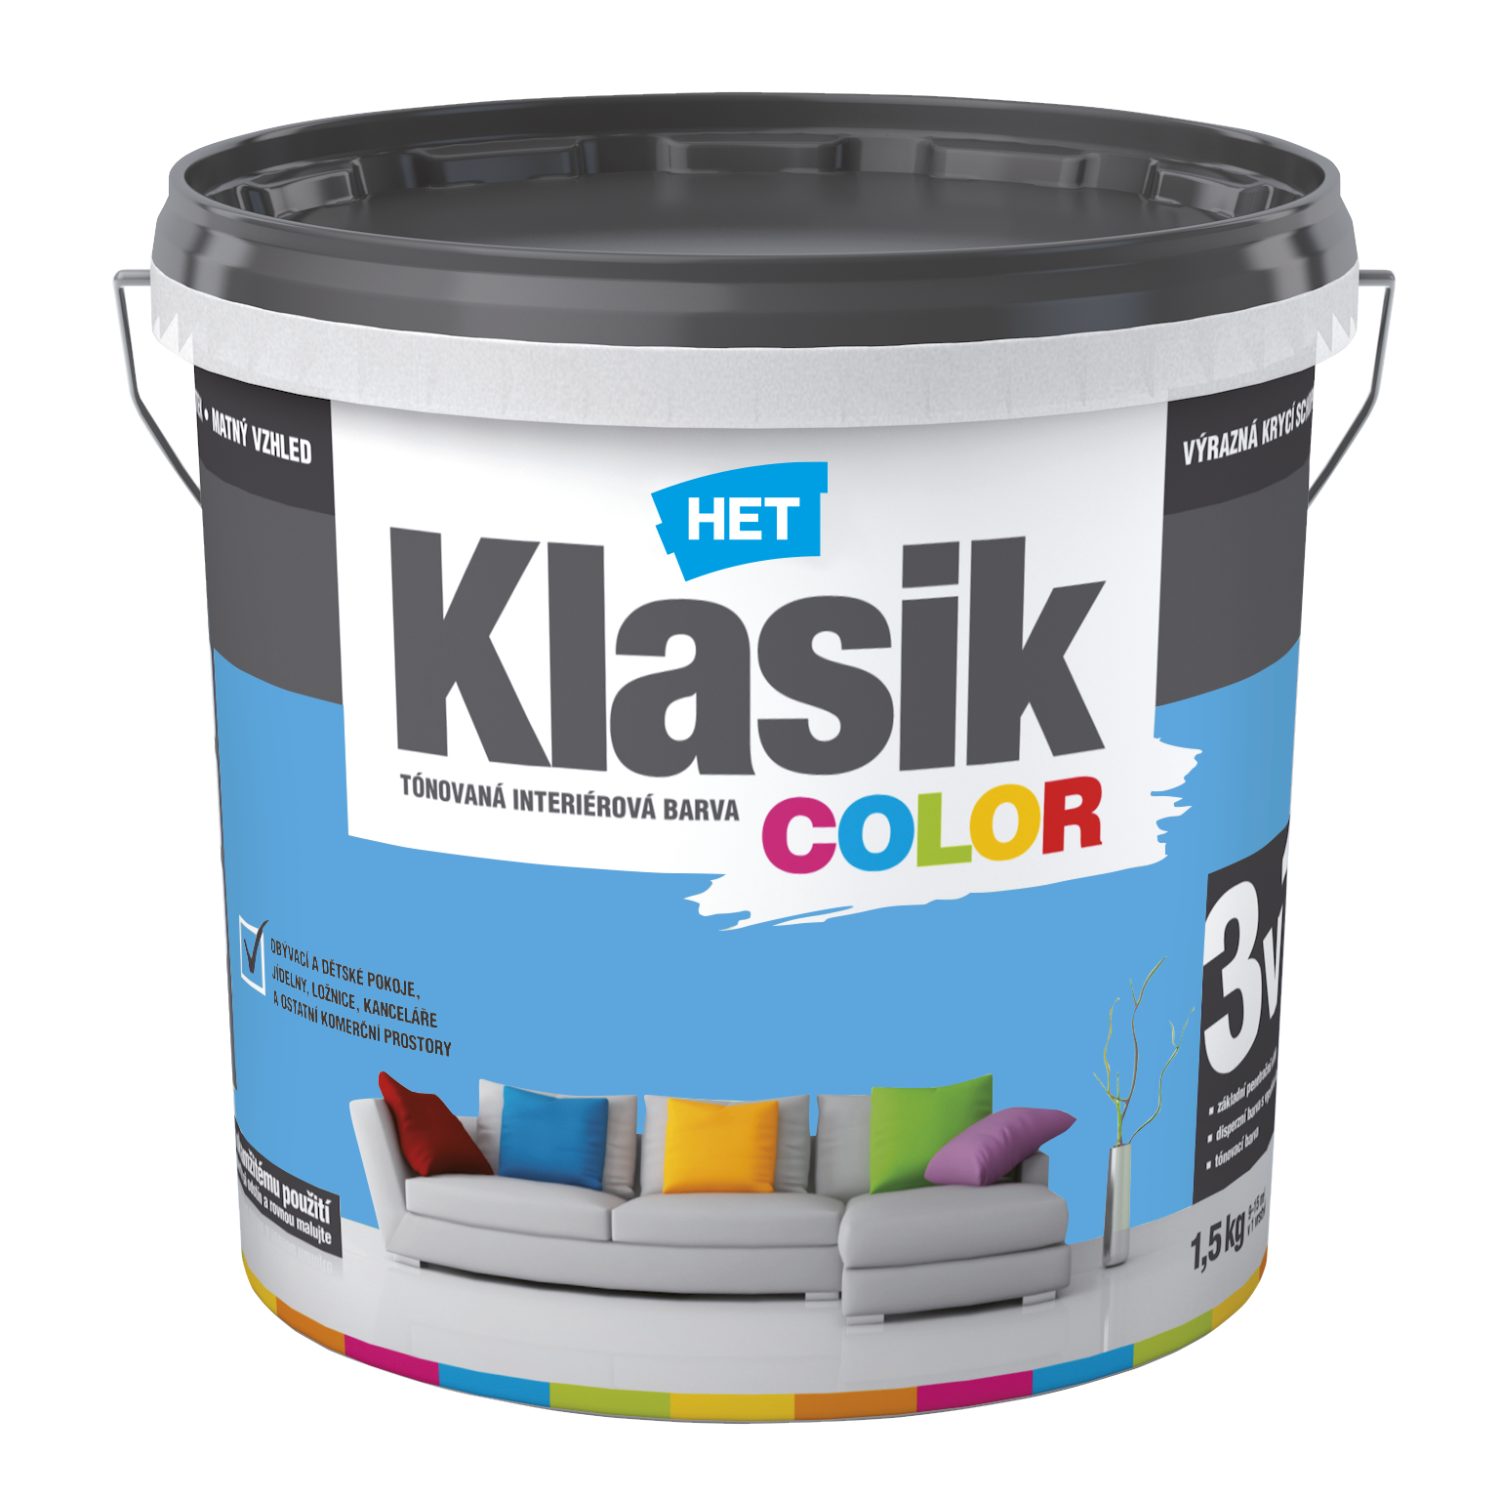 HET Klasik COLOR tónovaná interiérová akrylátová disperzná oteruvzdorná farba 1,5 kg, KC0407 - modrý blankytný